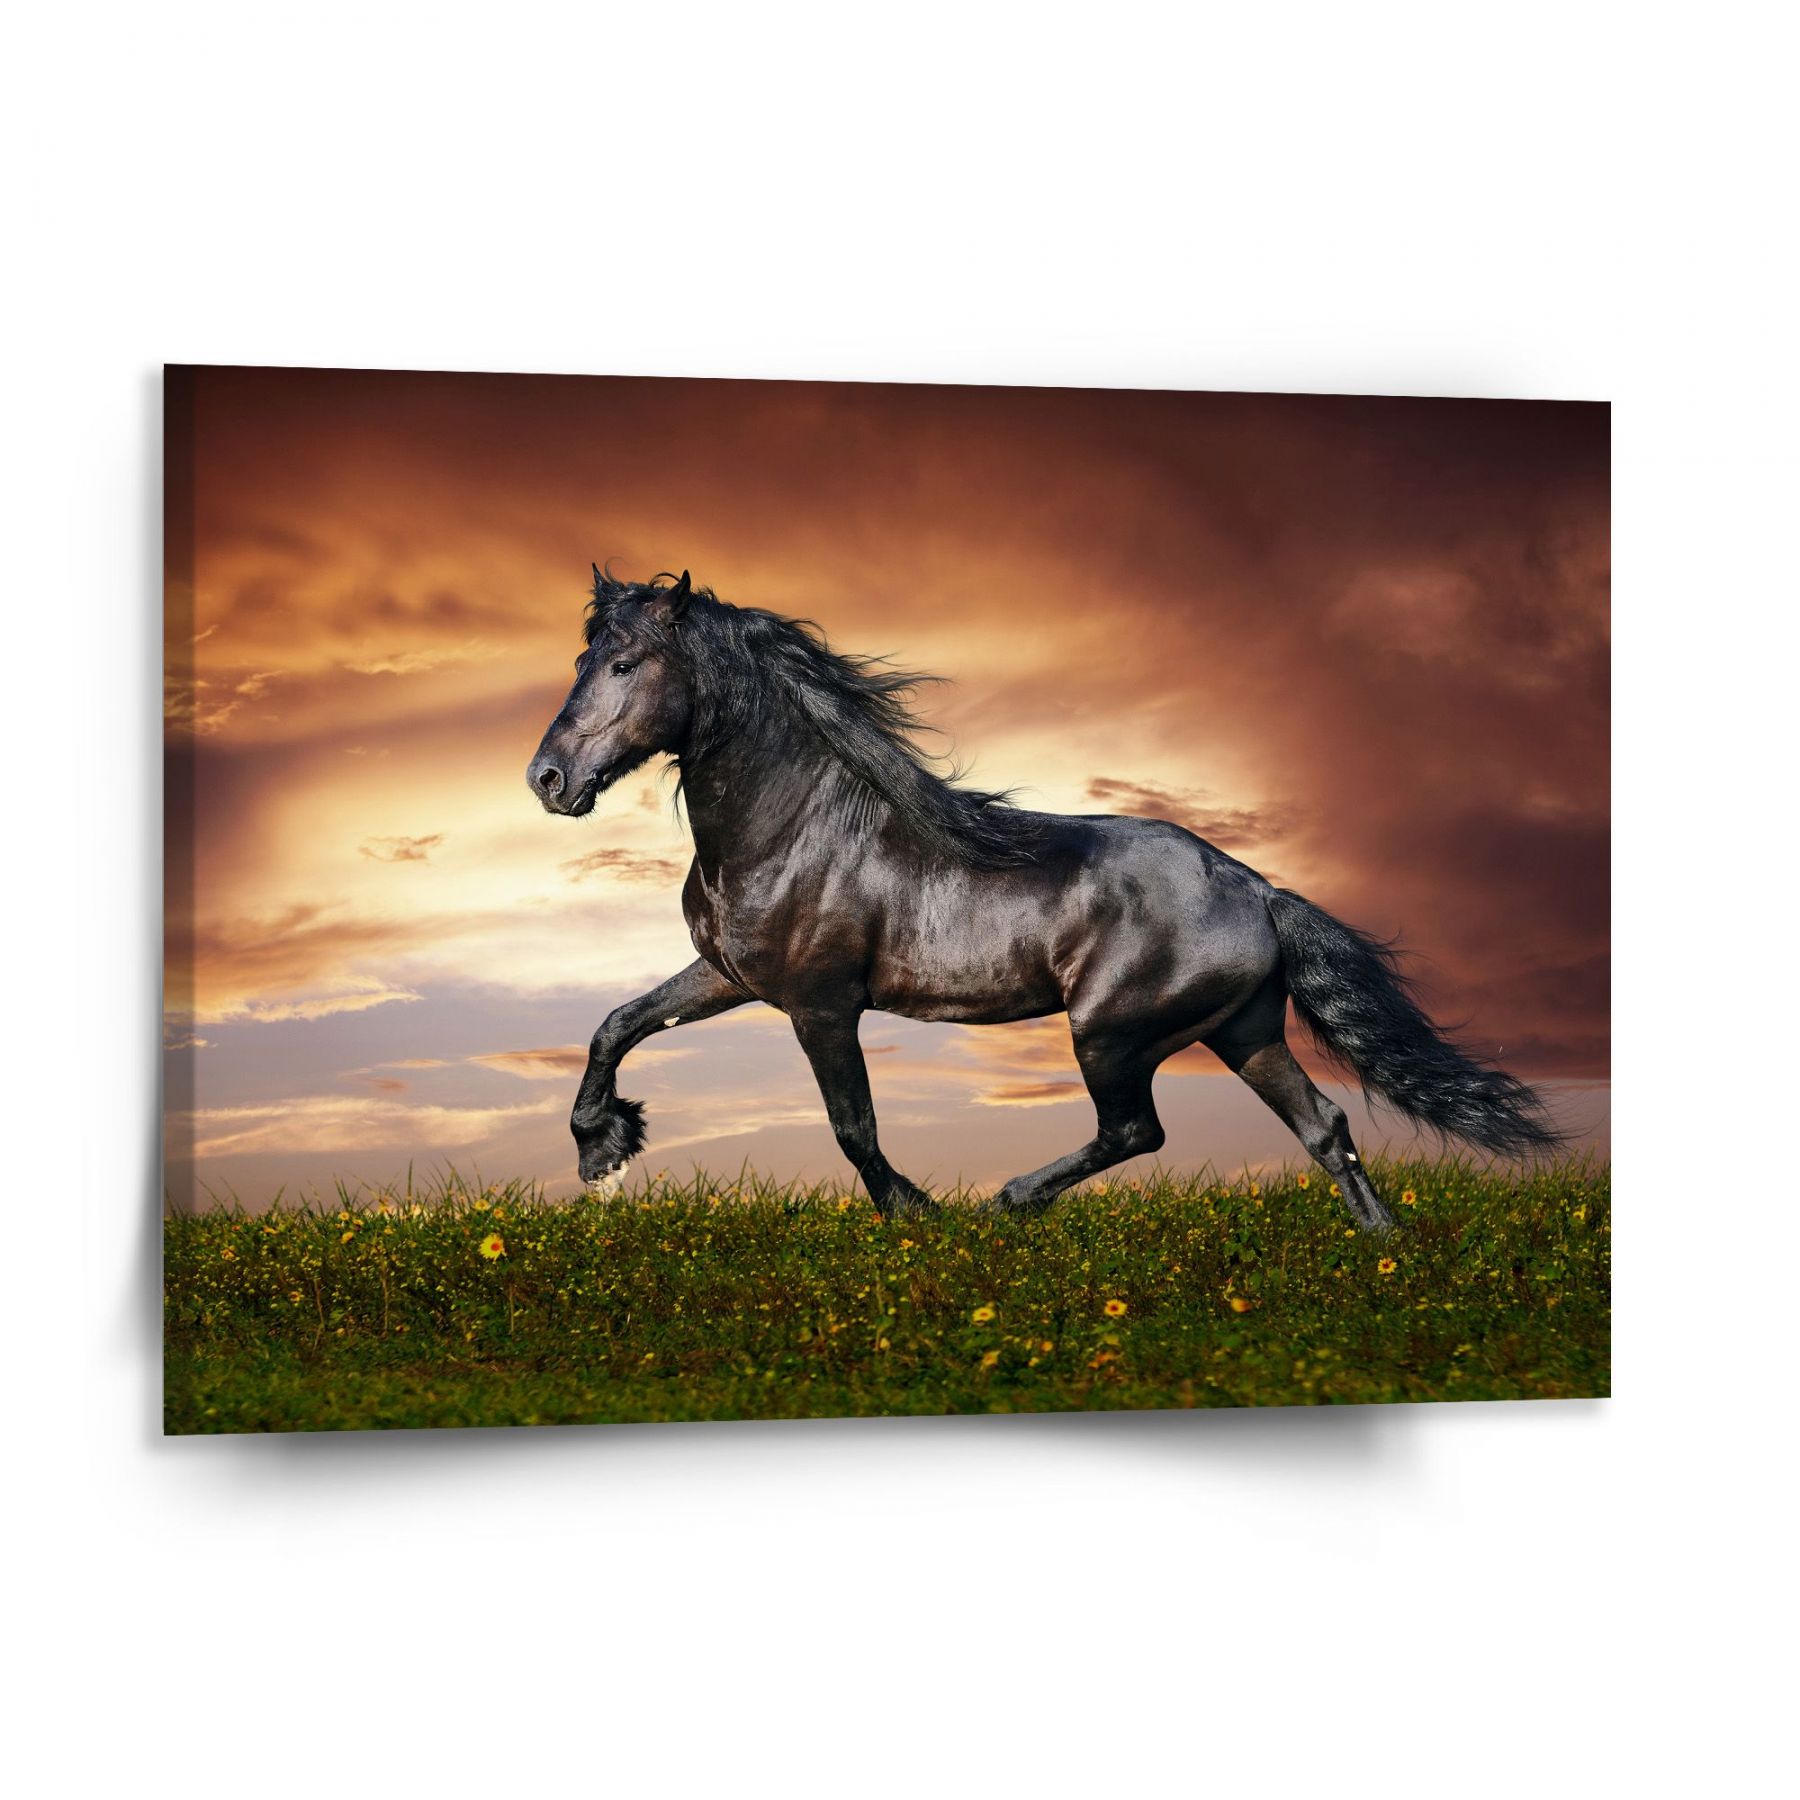 Obraz SABLIO - Friský kůň 150x110 cm - E-shop Sablo s.r.o.